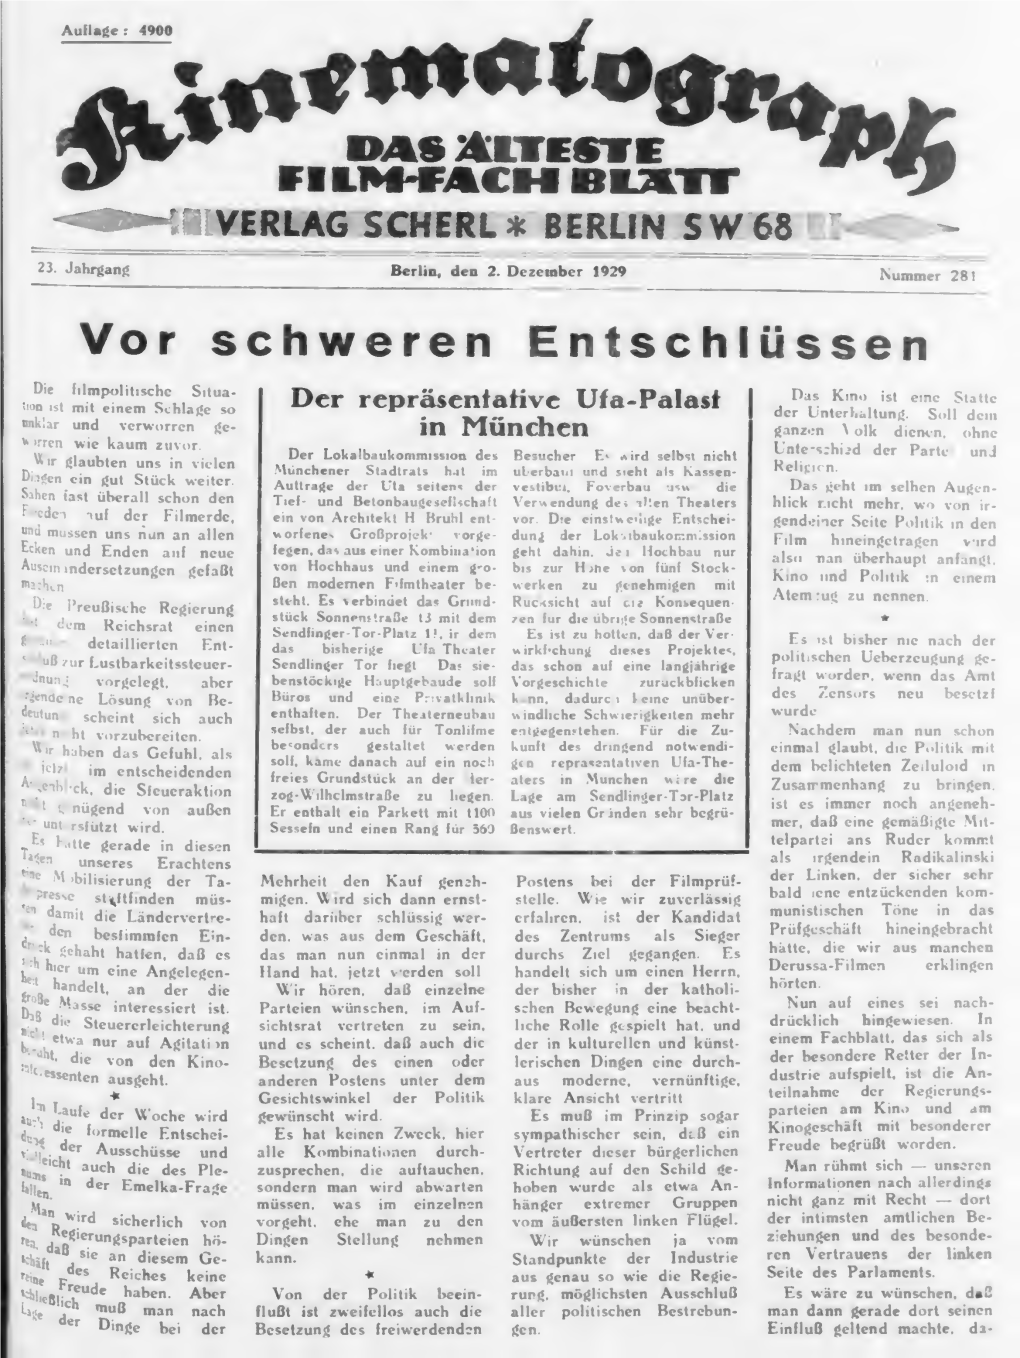 Der Kinematograph (December 1929)